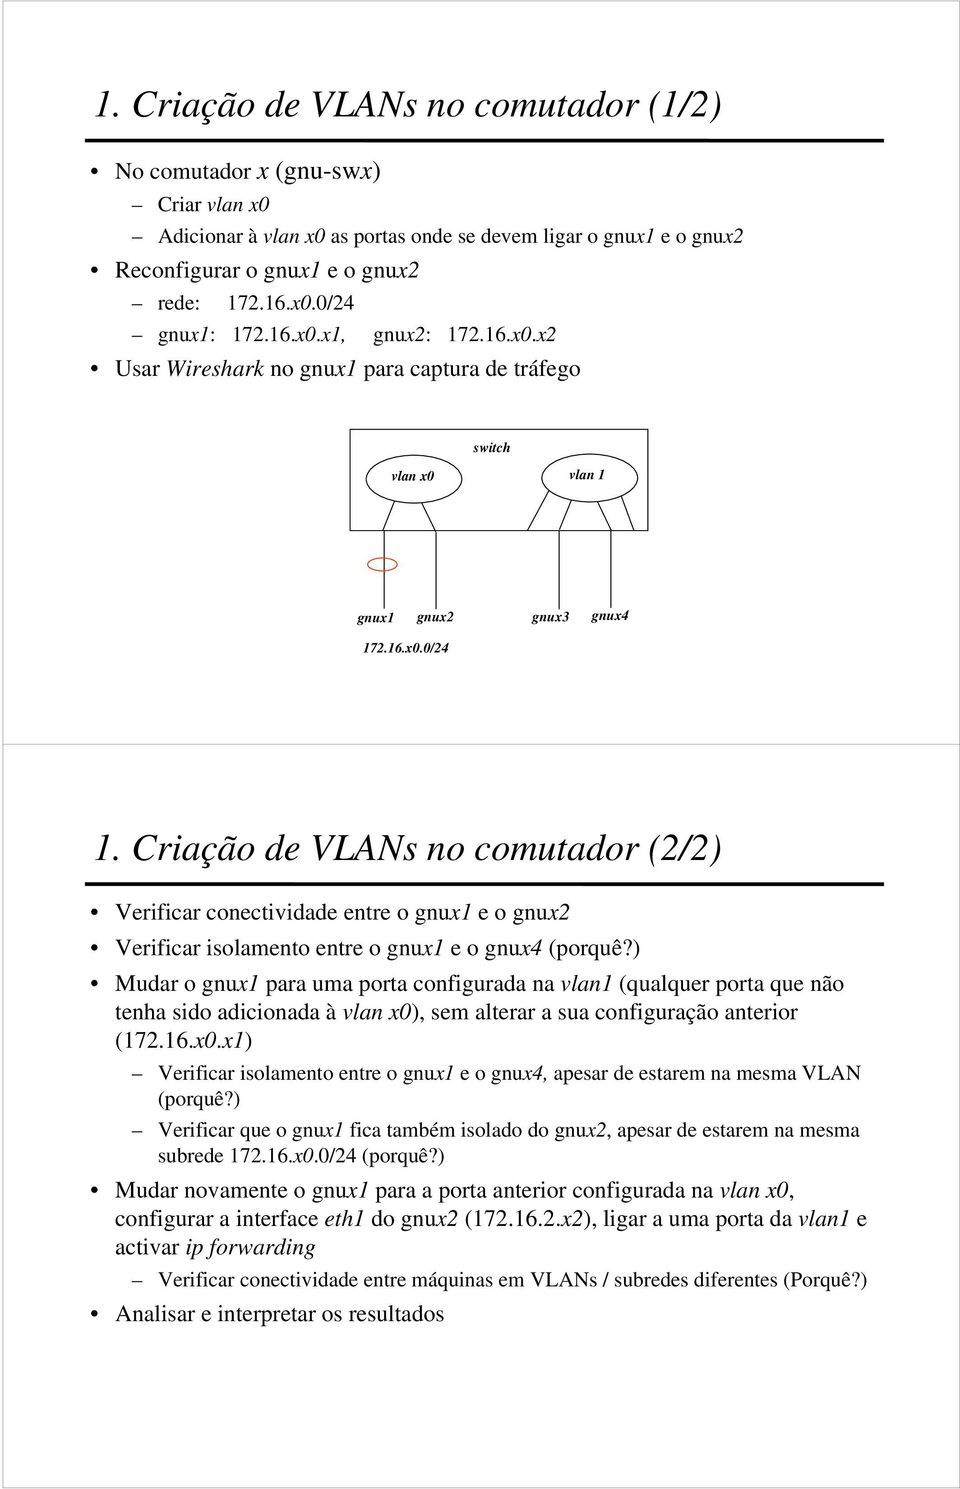 Criação de VLANs no comutador (2/2) Verificar conectividade entre o gnux1 e o gnux2 Verificar isolamento entre o gnux1 e o gnux4 (porquê?